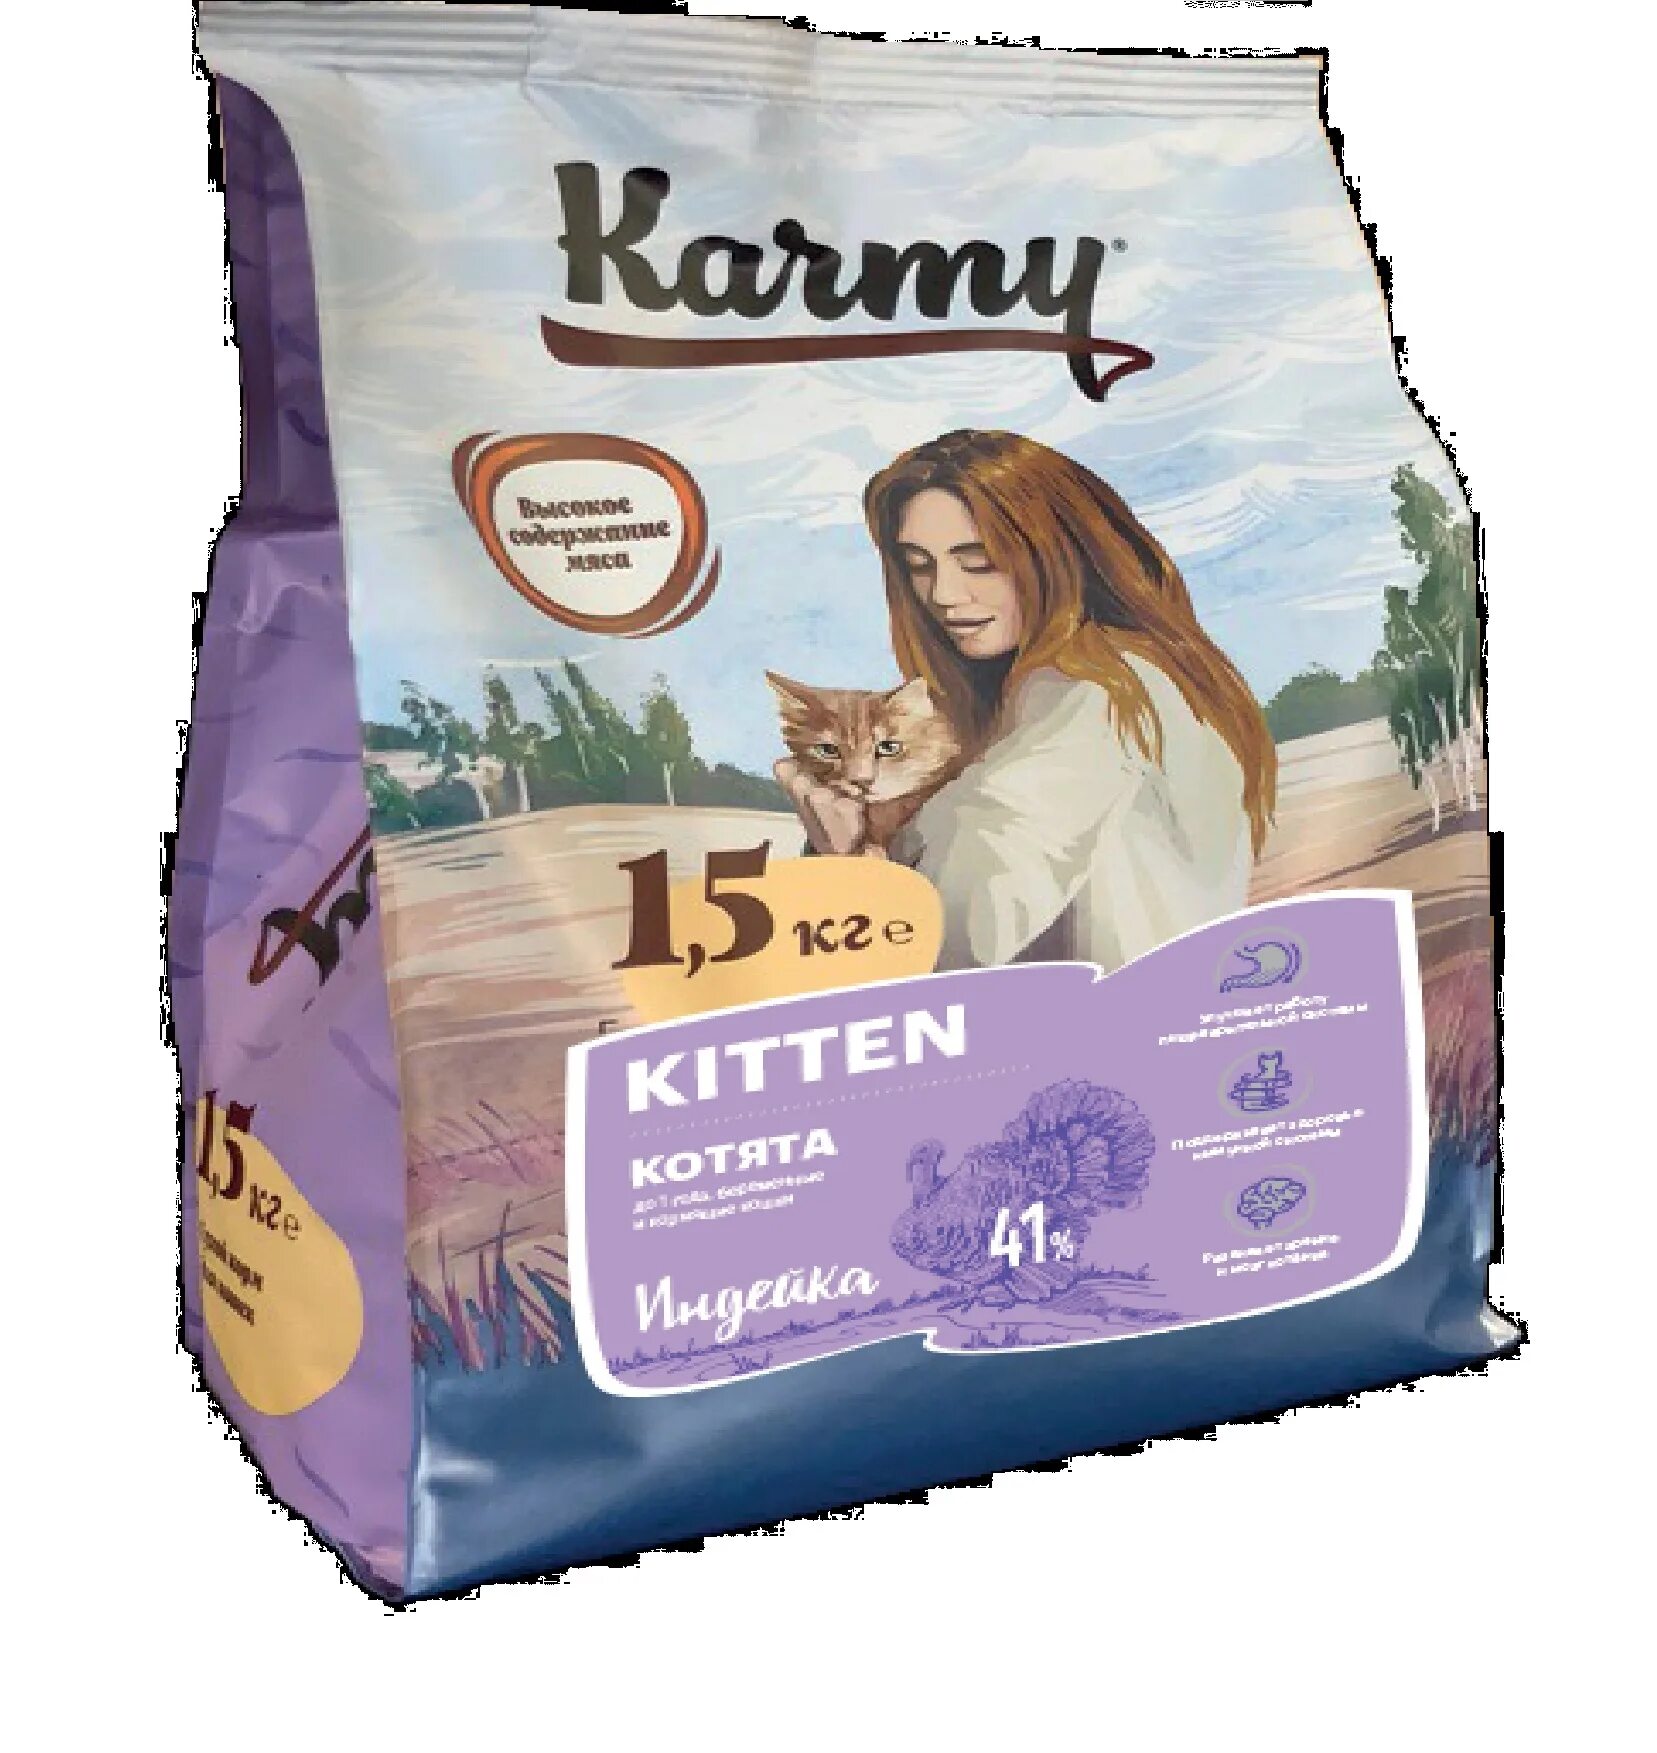 Карми купить для собак. Karmy Kitten корм для котят индейка 1.5 кг. Корм для кошек с индейкой karmy. Корм karmy для кошек премиум класса. Коррм для котят Карми премиум.